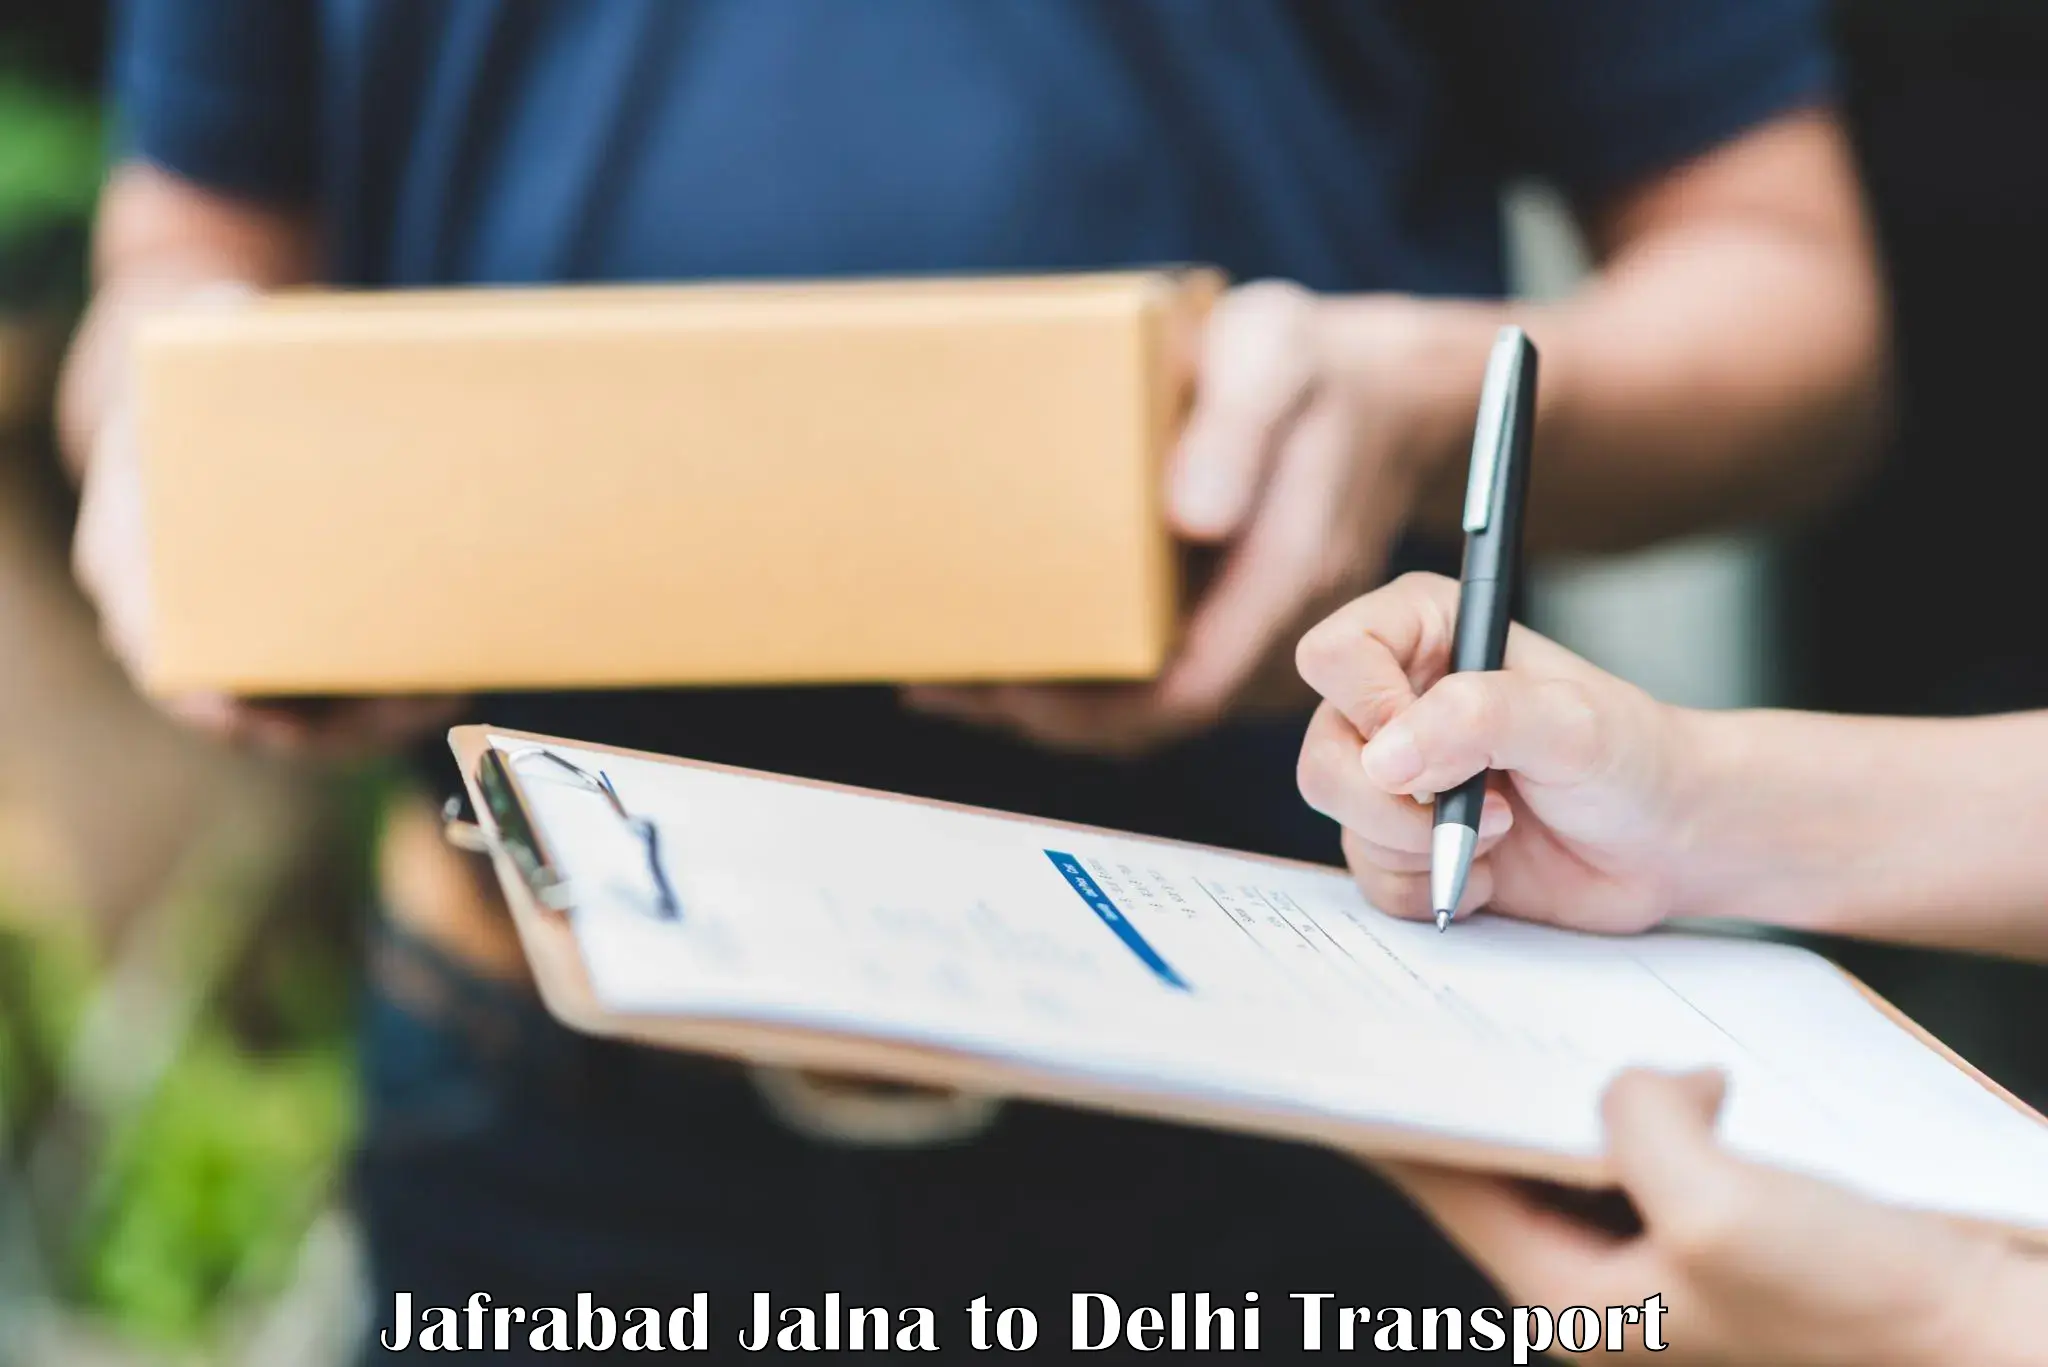 India truck logistics services Jafrabad Jalna to Delhi